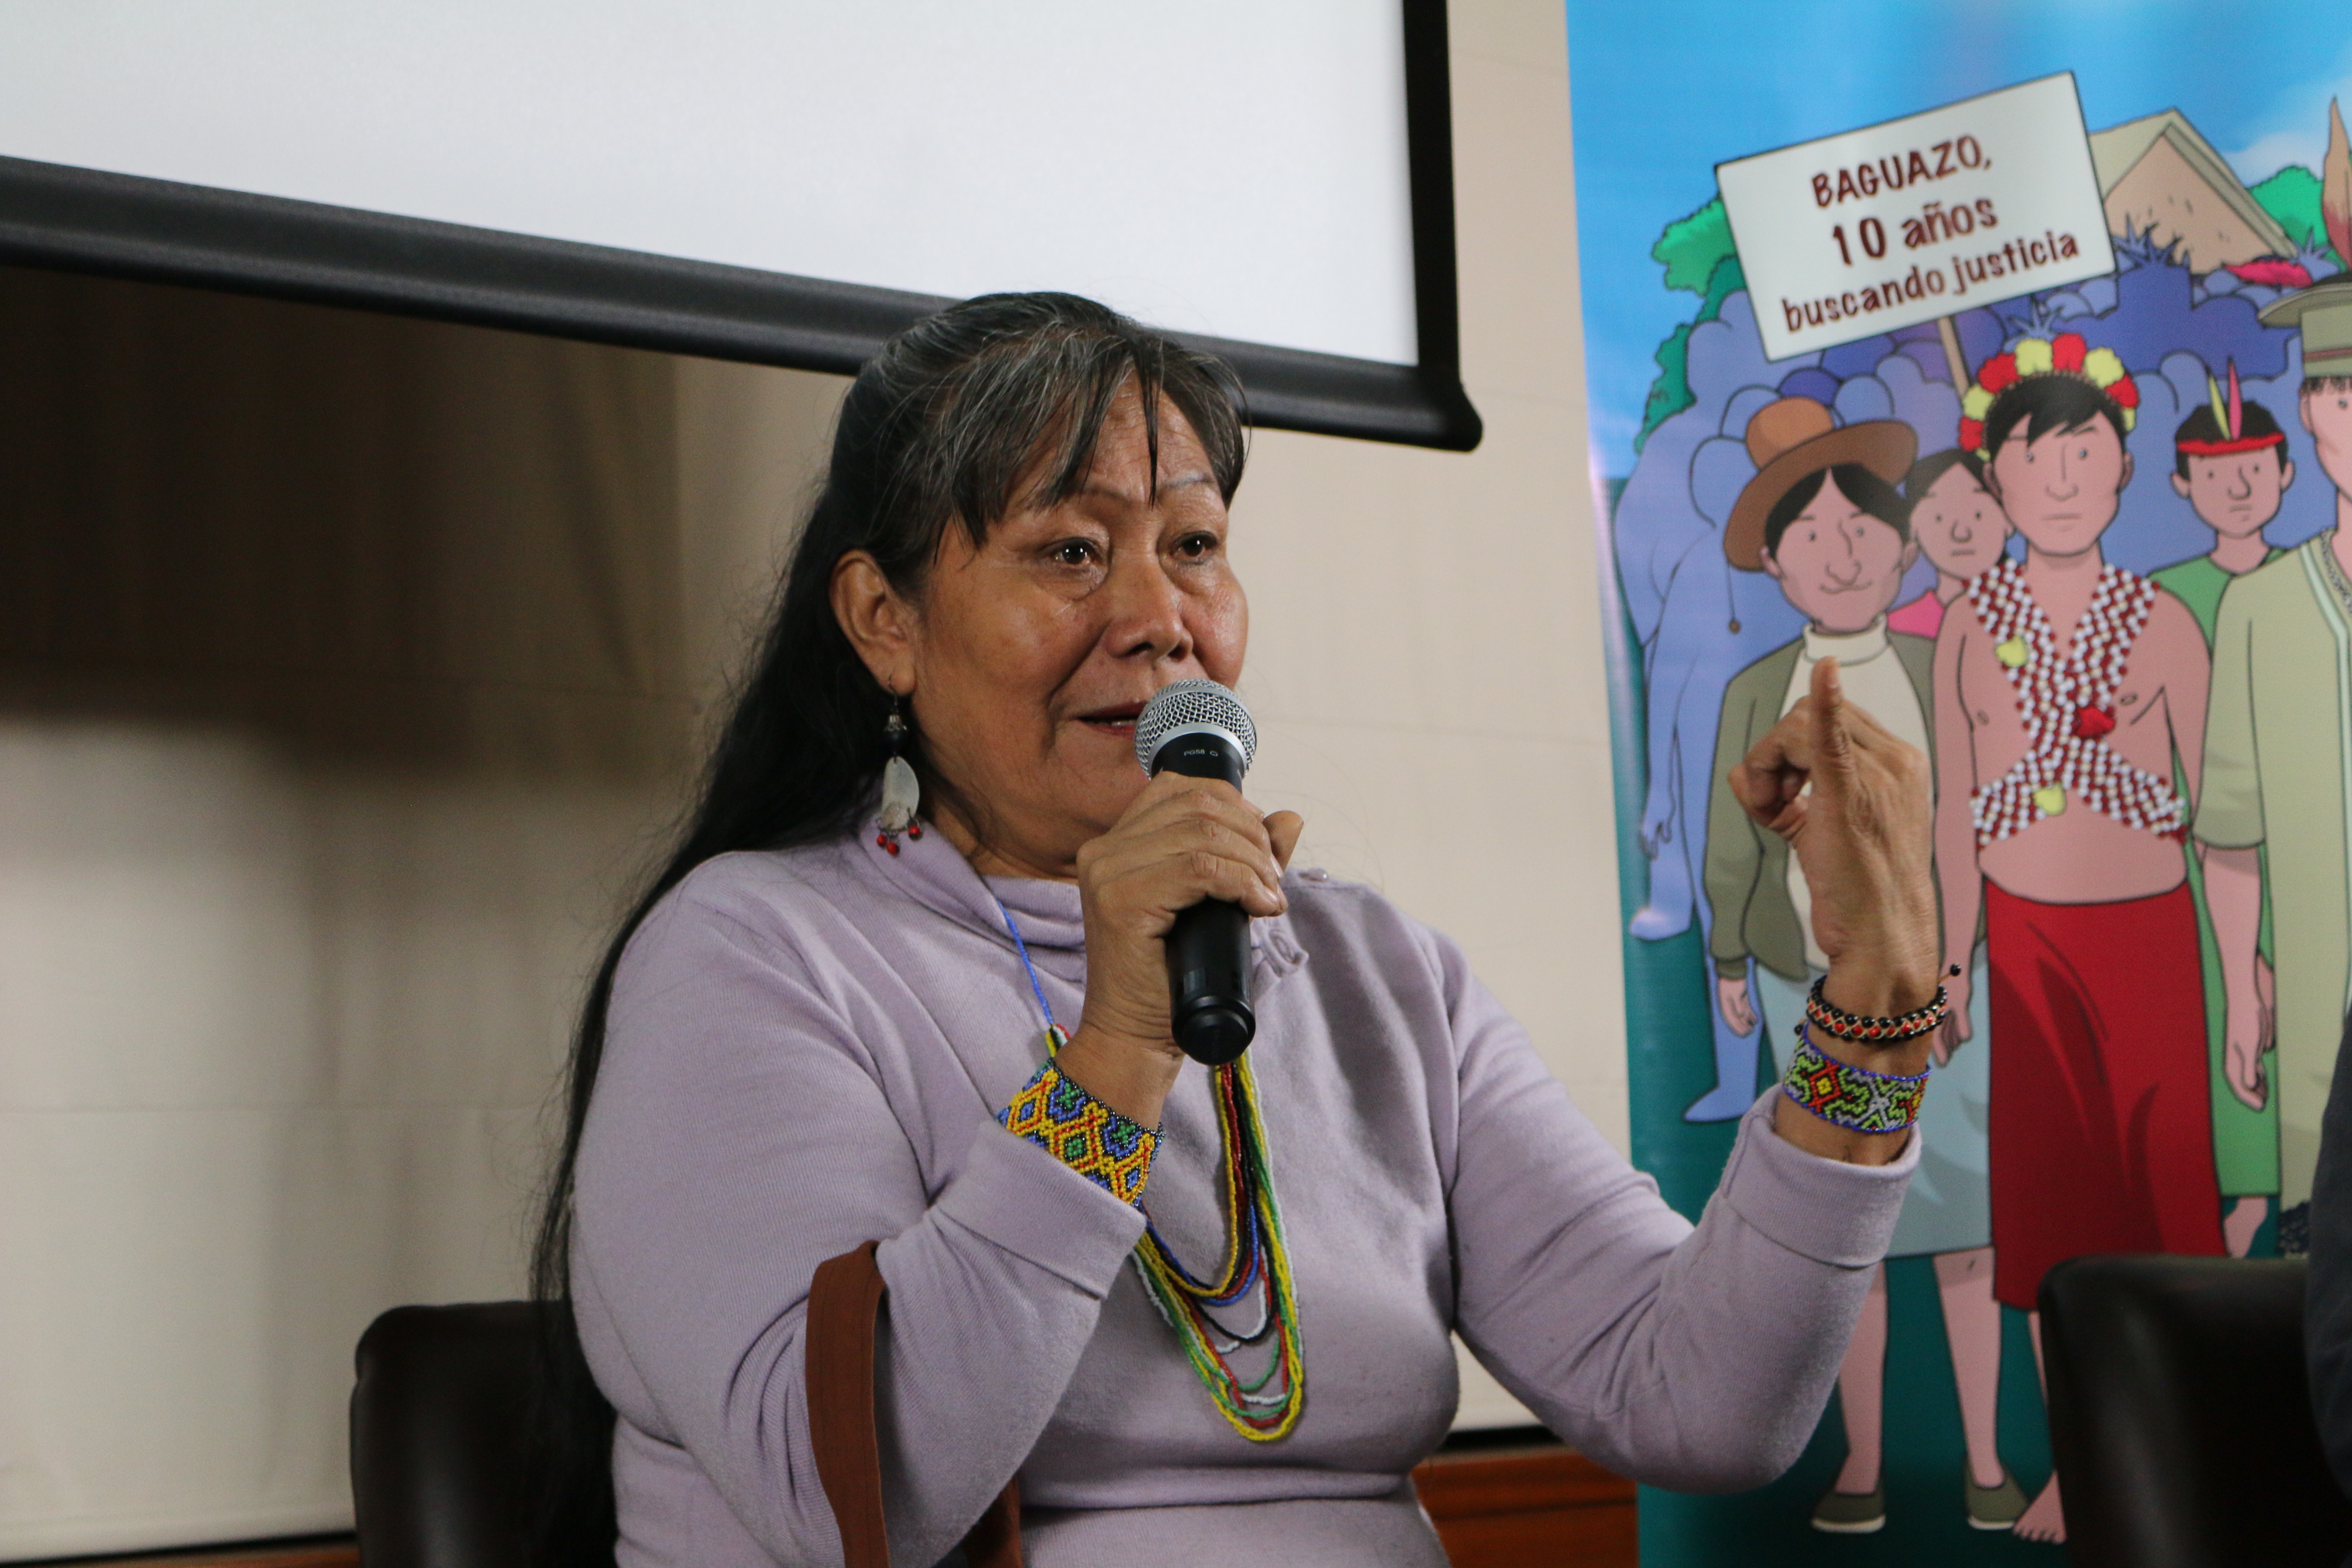 Las mujeres en defensa de nuestros territorios a 10 años de Bagua